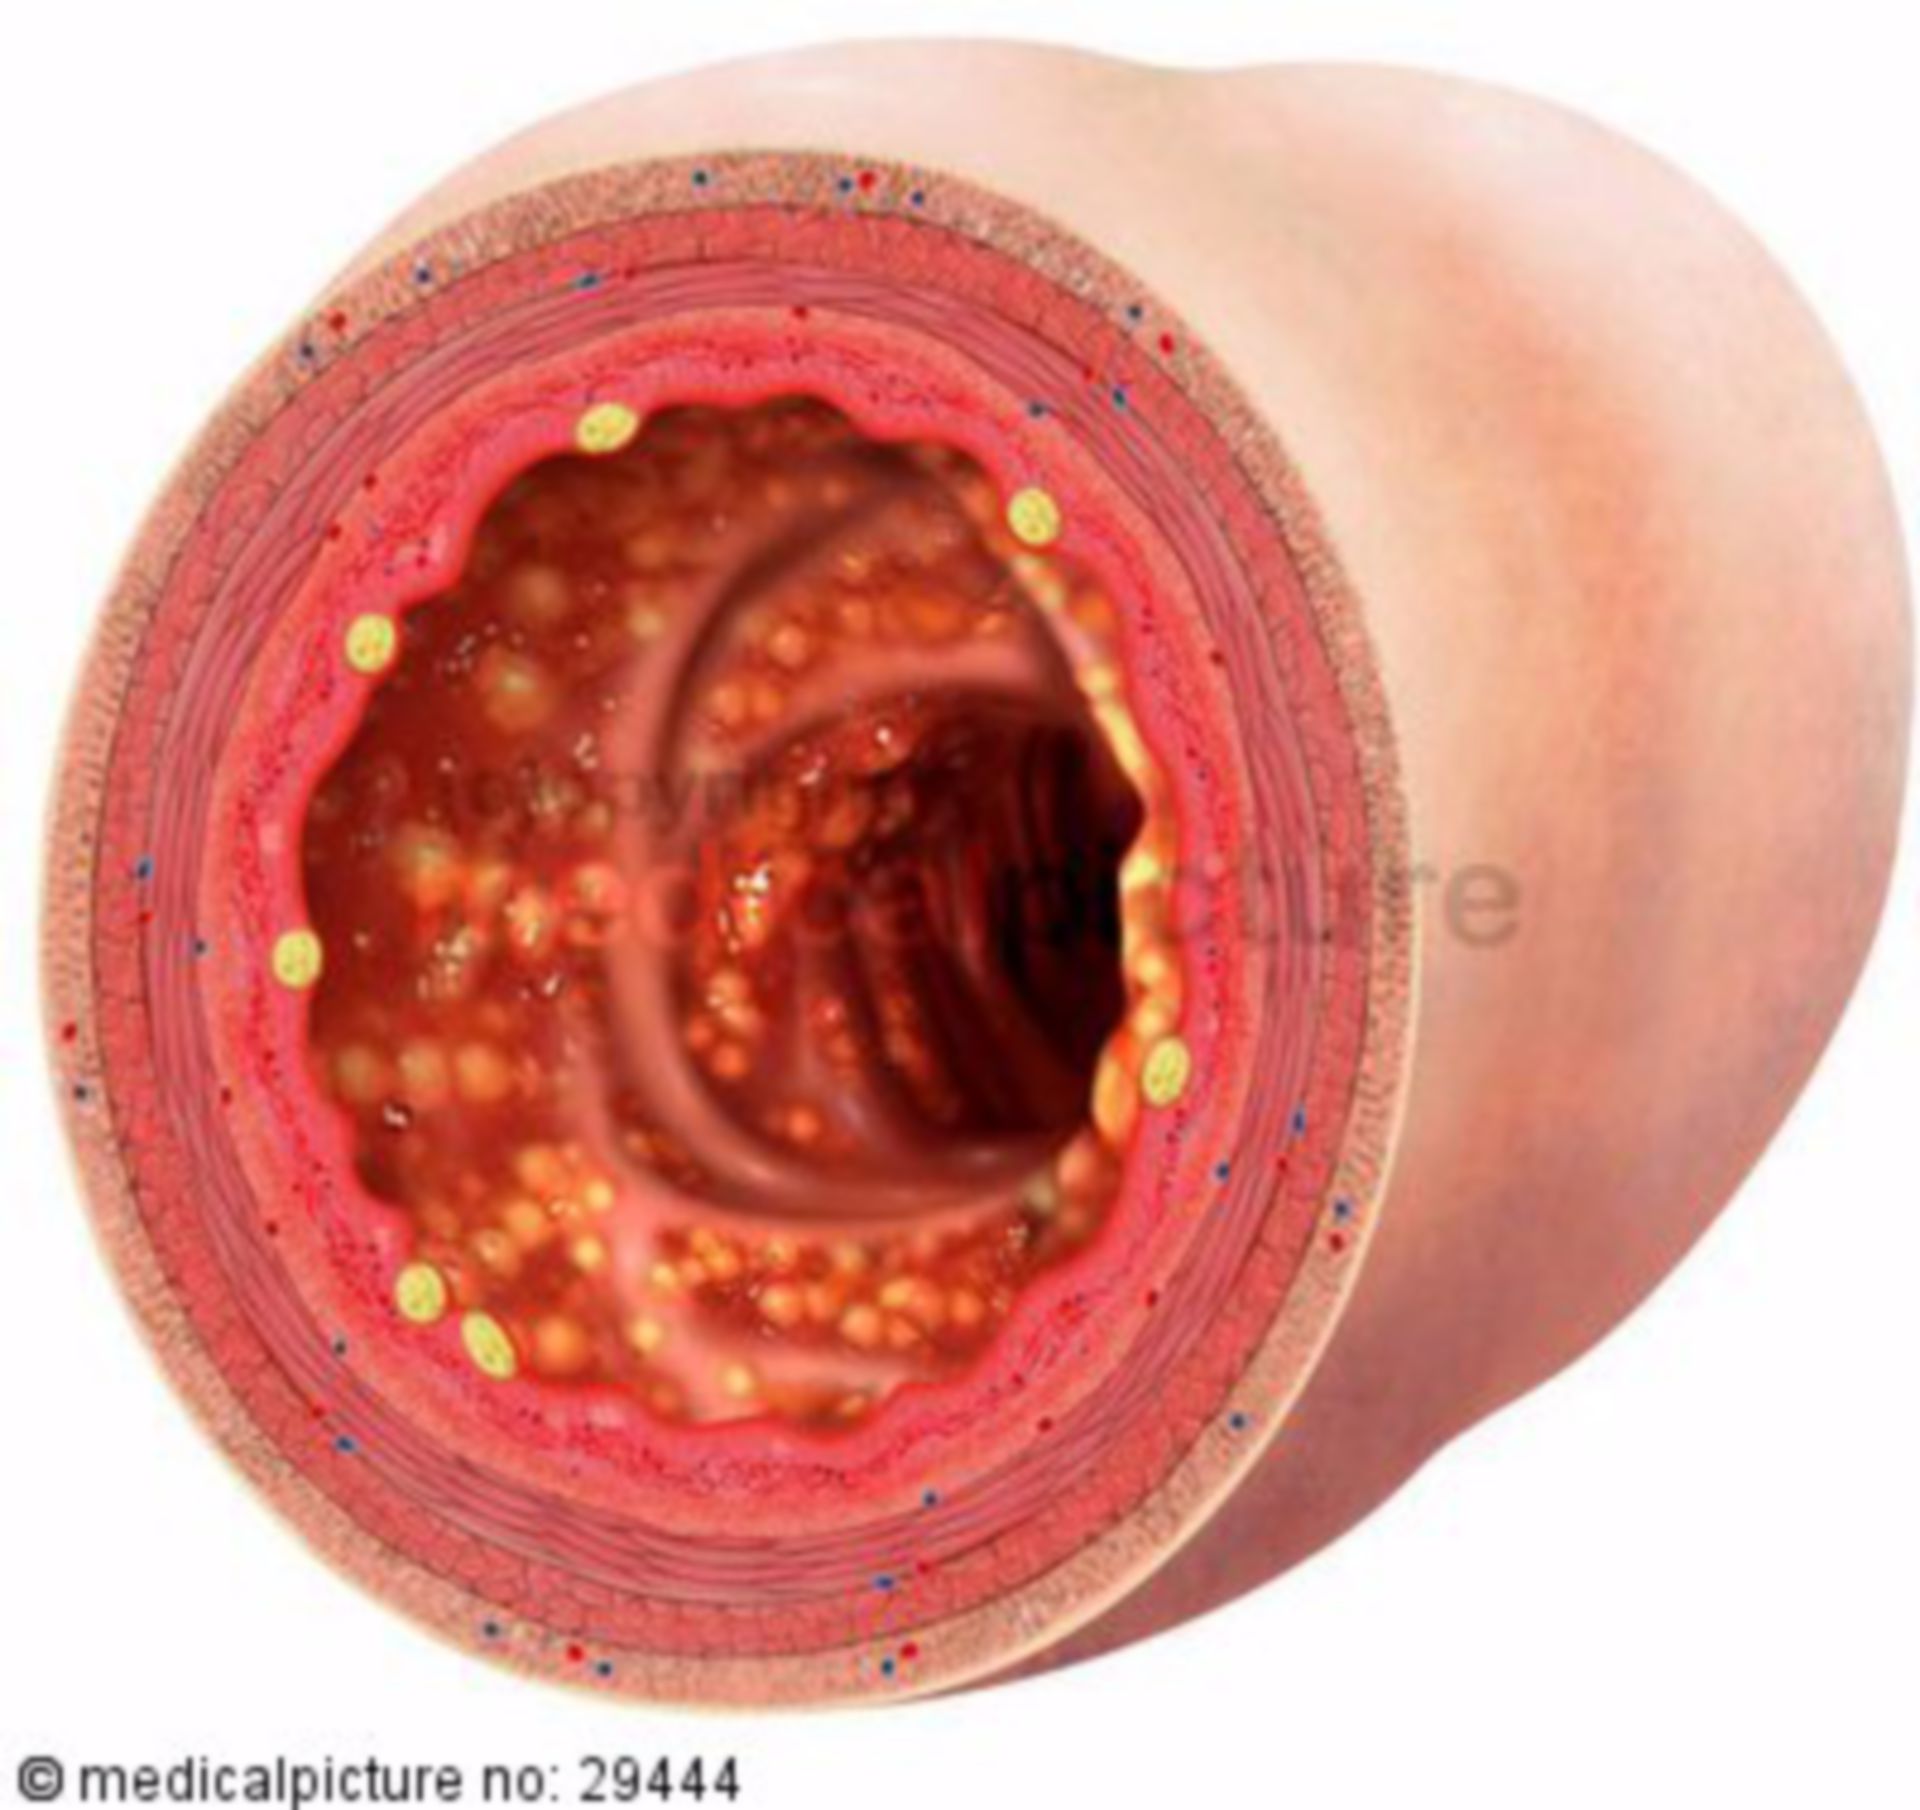 Lumen of a Colon with Colitis Ulcerosa